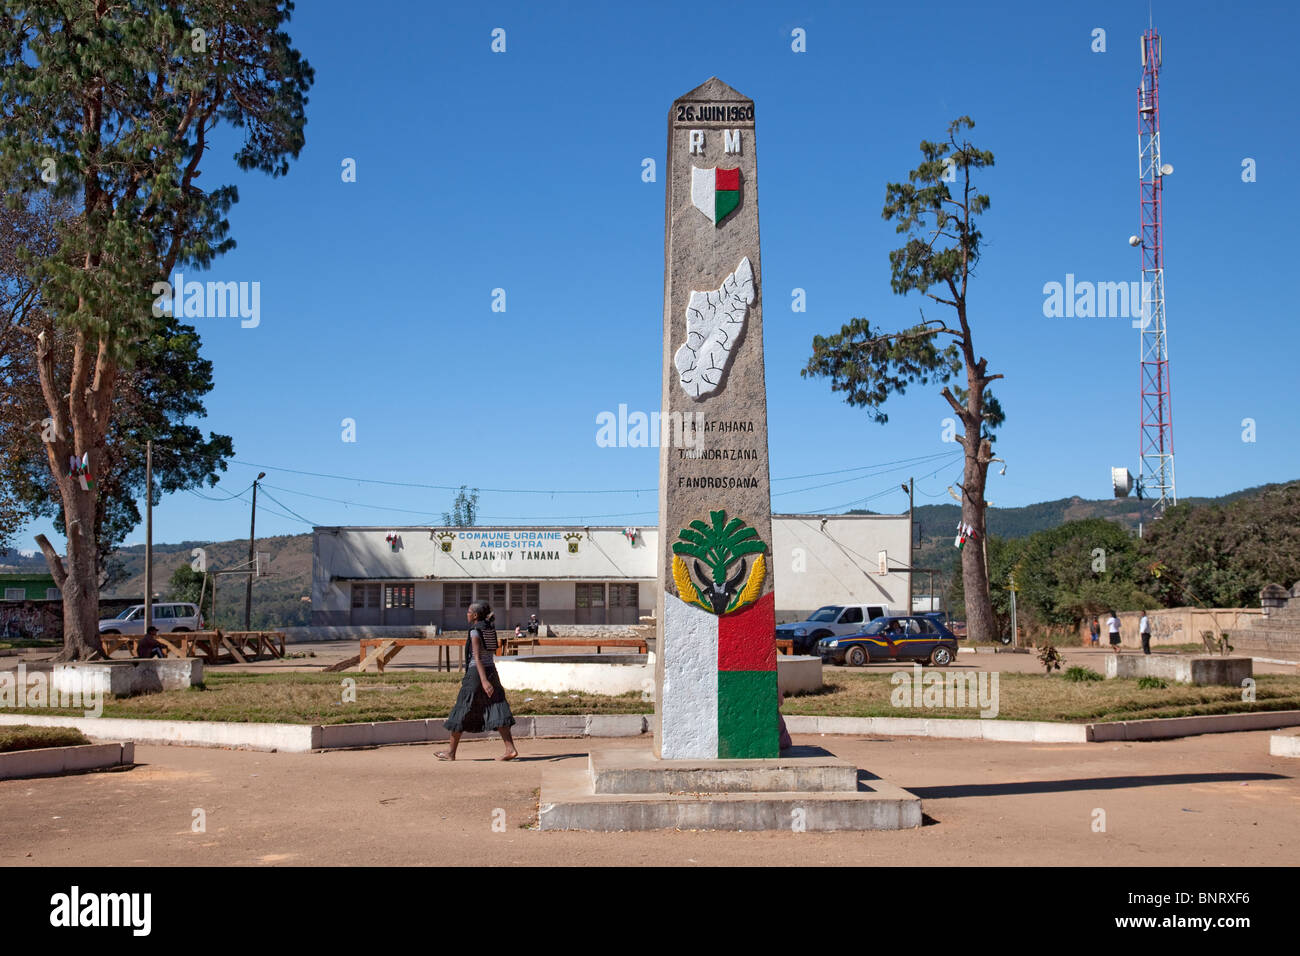 Monument pour commémorer l'indépendance de Madagascar le 26 juin 1960, à Paris, dans les hauts plateaux du centre de Madagascar. Banque D'Images